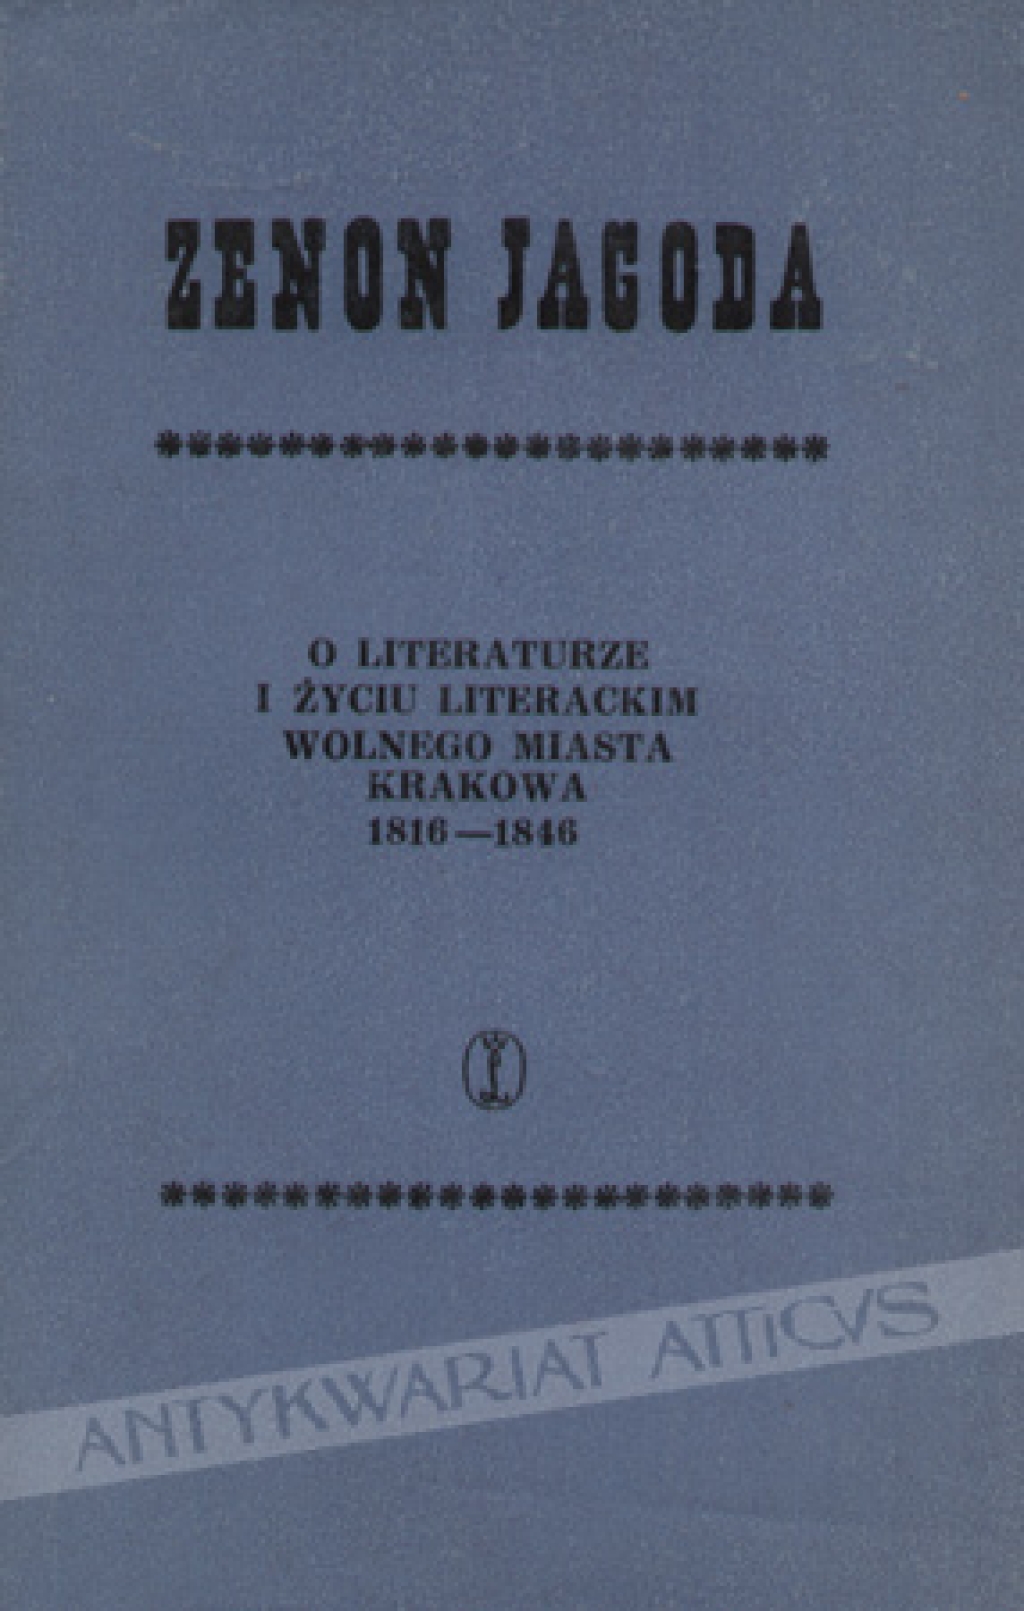 O literaturze i życiu literackim Wolnego Miasta Krakowa 1816-1846